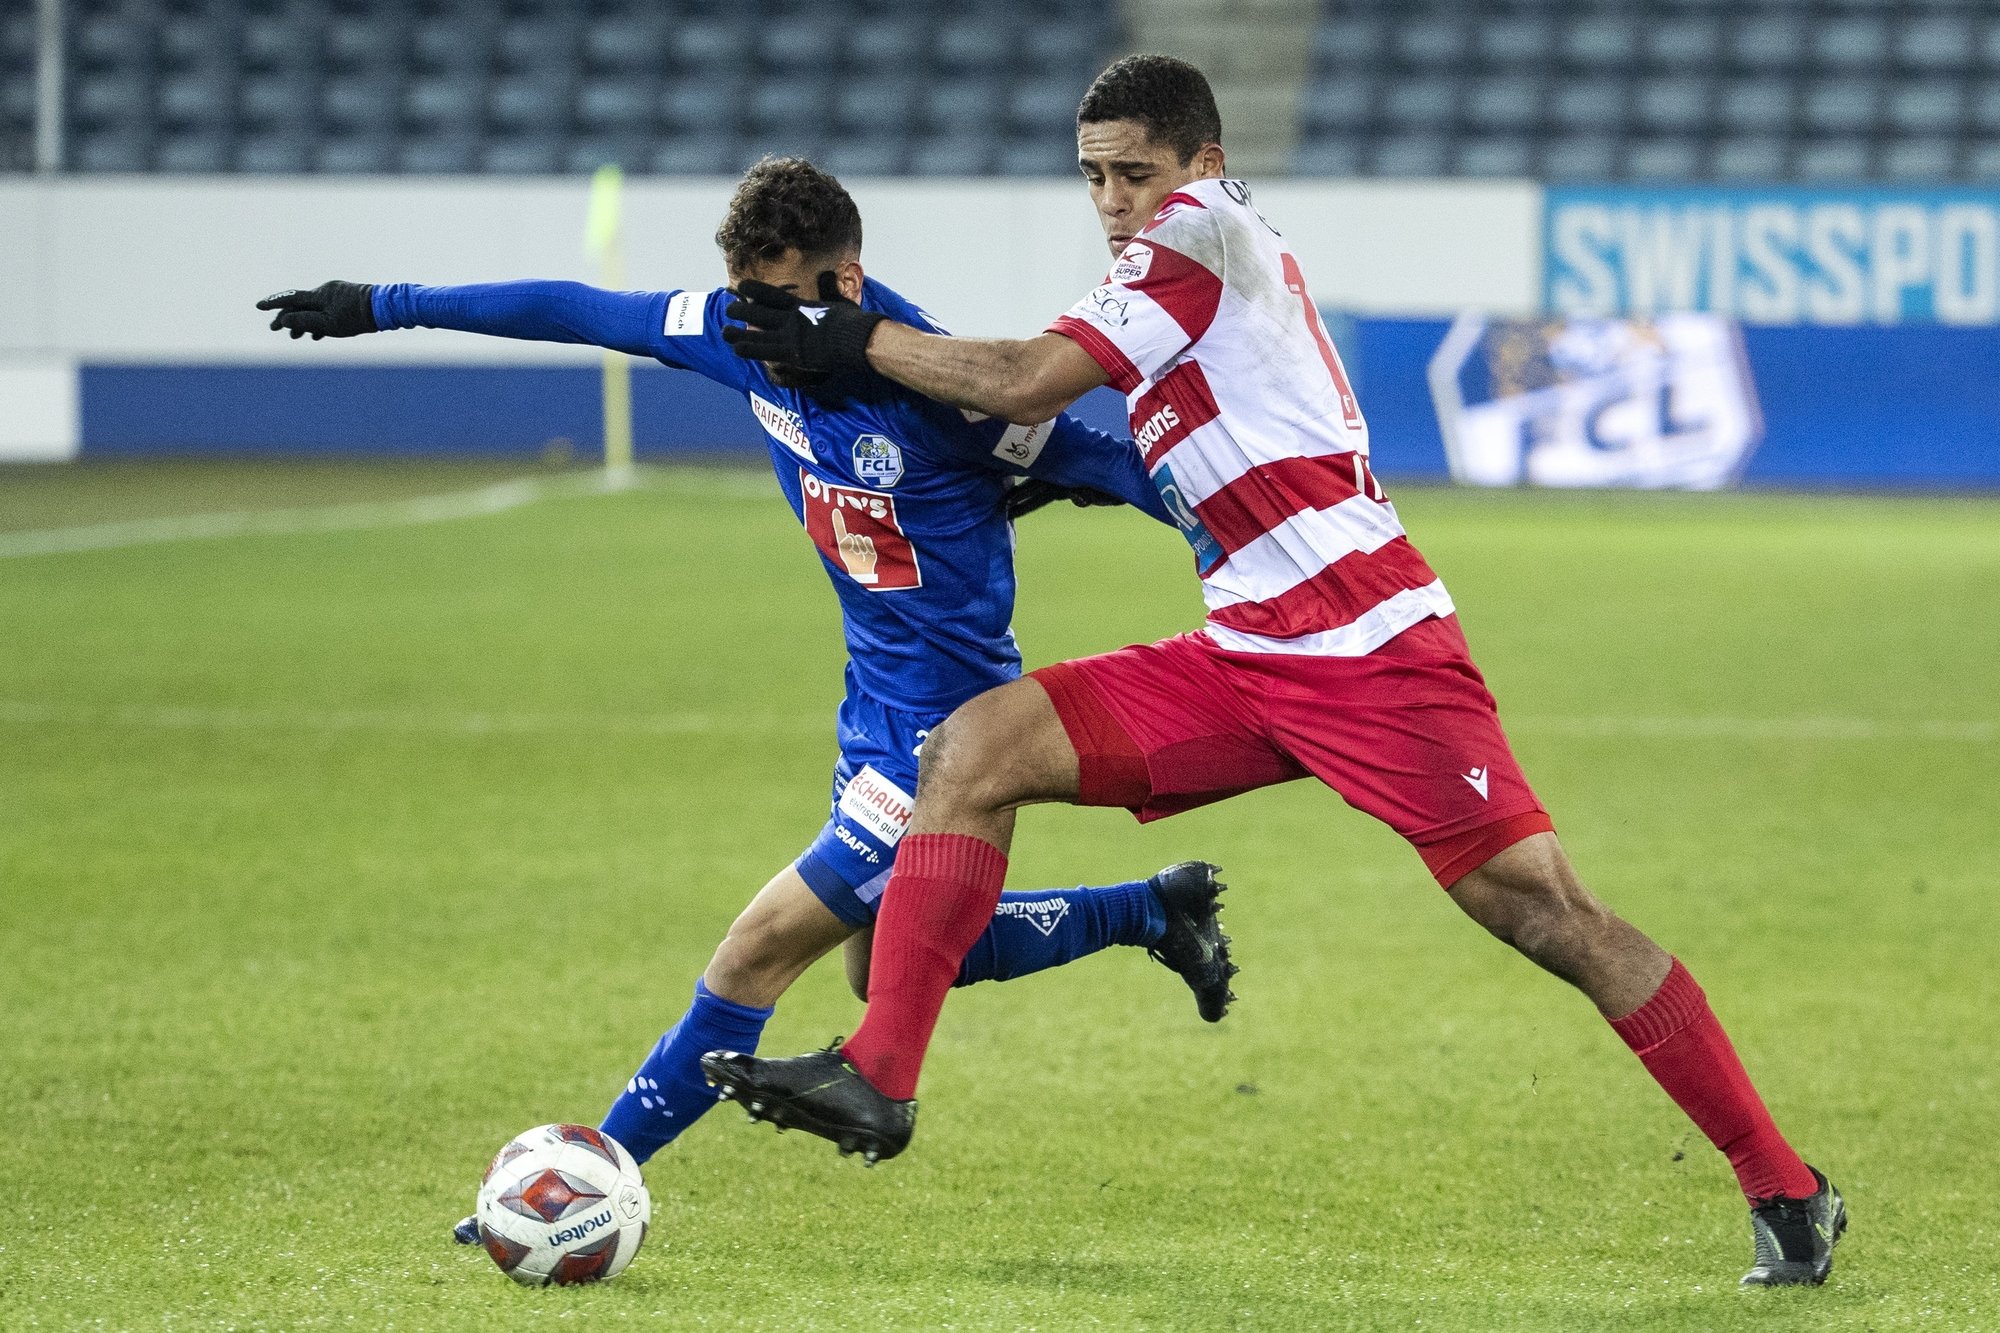 Varol Tasar et Cleilton Itaitinga s'accrochent durant le match entre le FC Lucerne et le FC Sion.